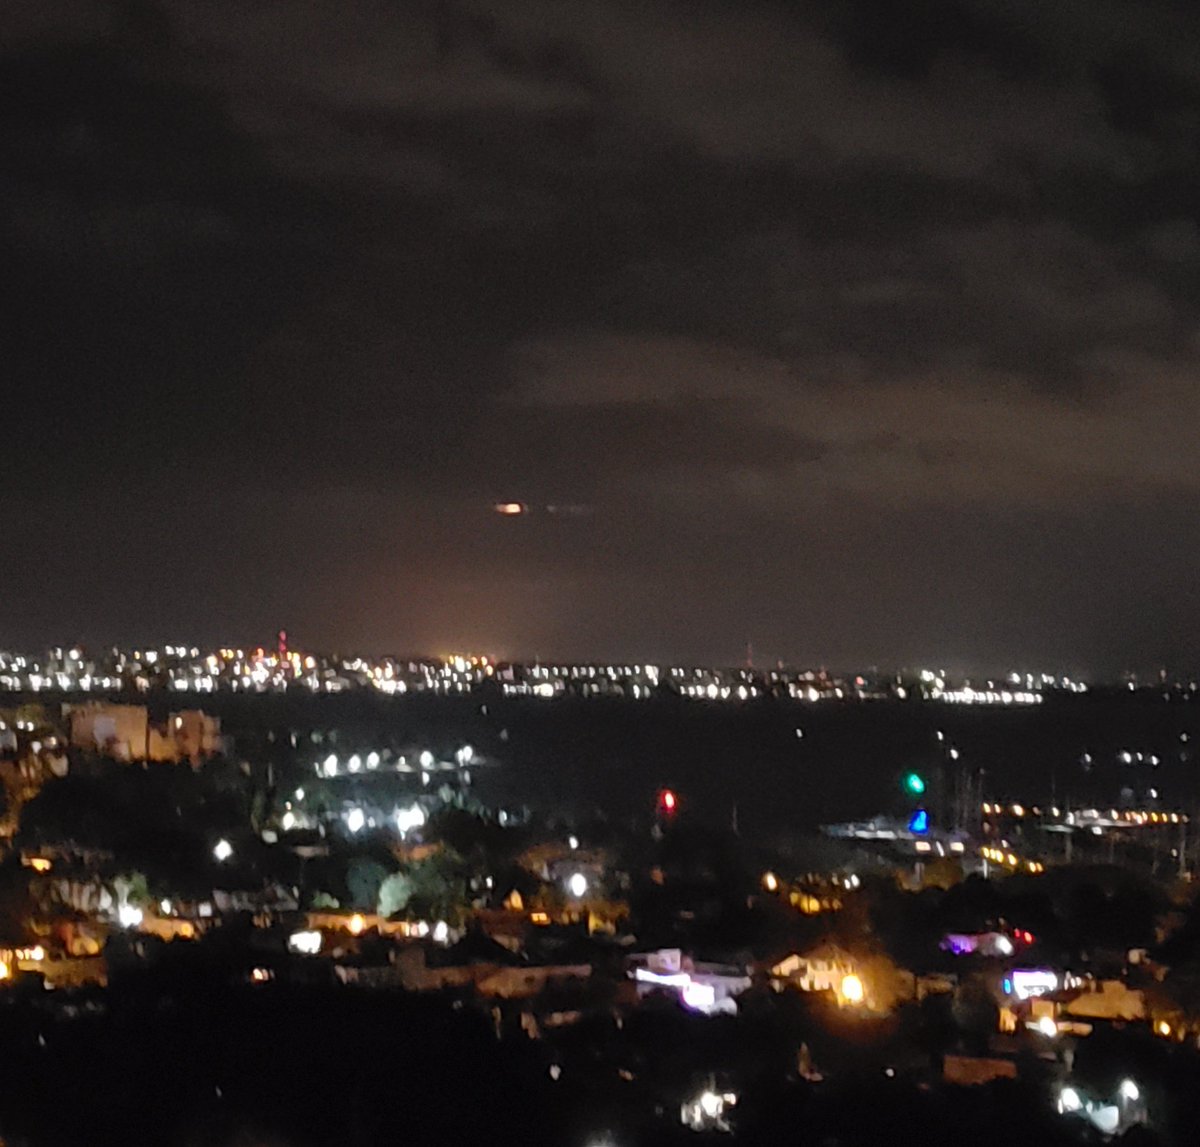 #FenomenoNatural Una extraña luz sobre #PuertoVallarta y no es la luna. #foto #sinfiltro